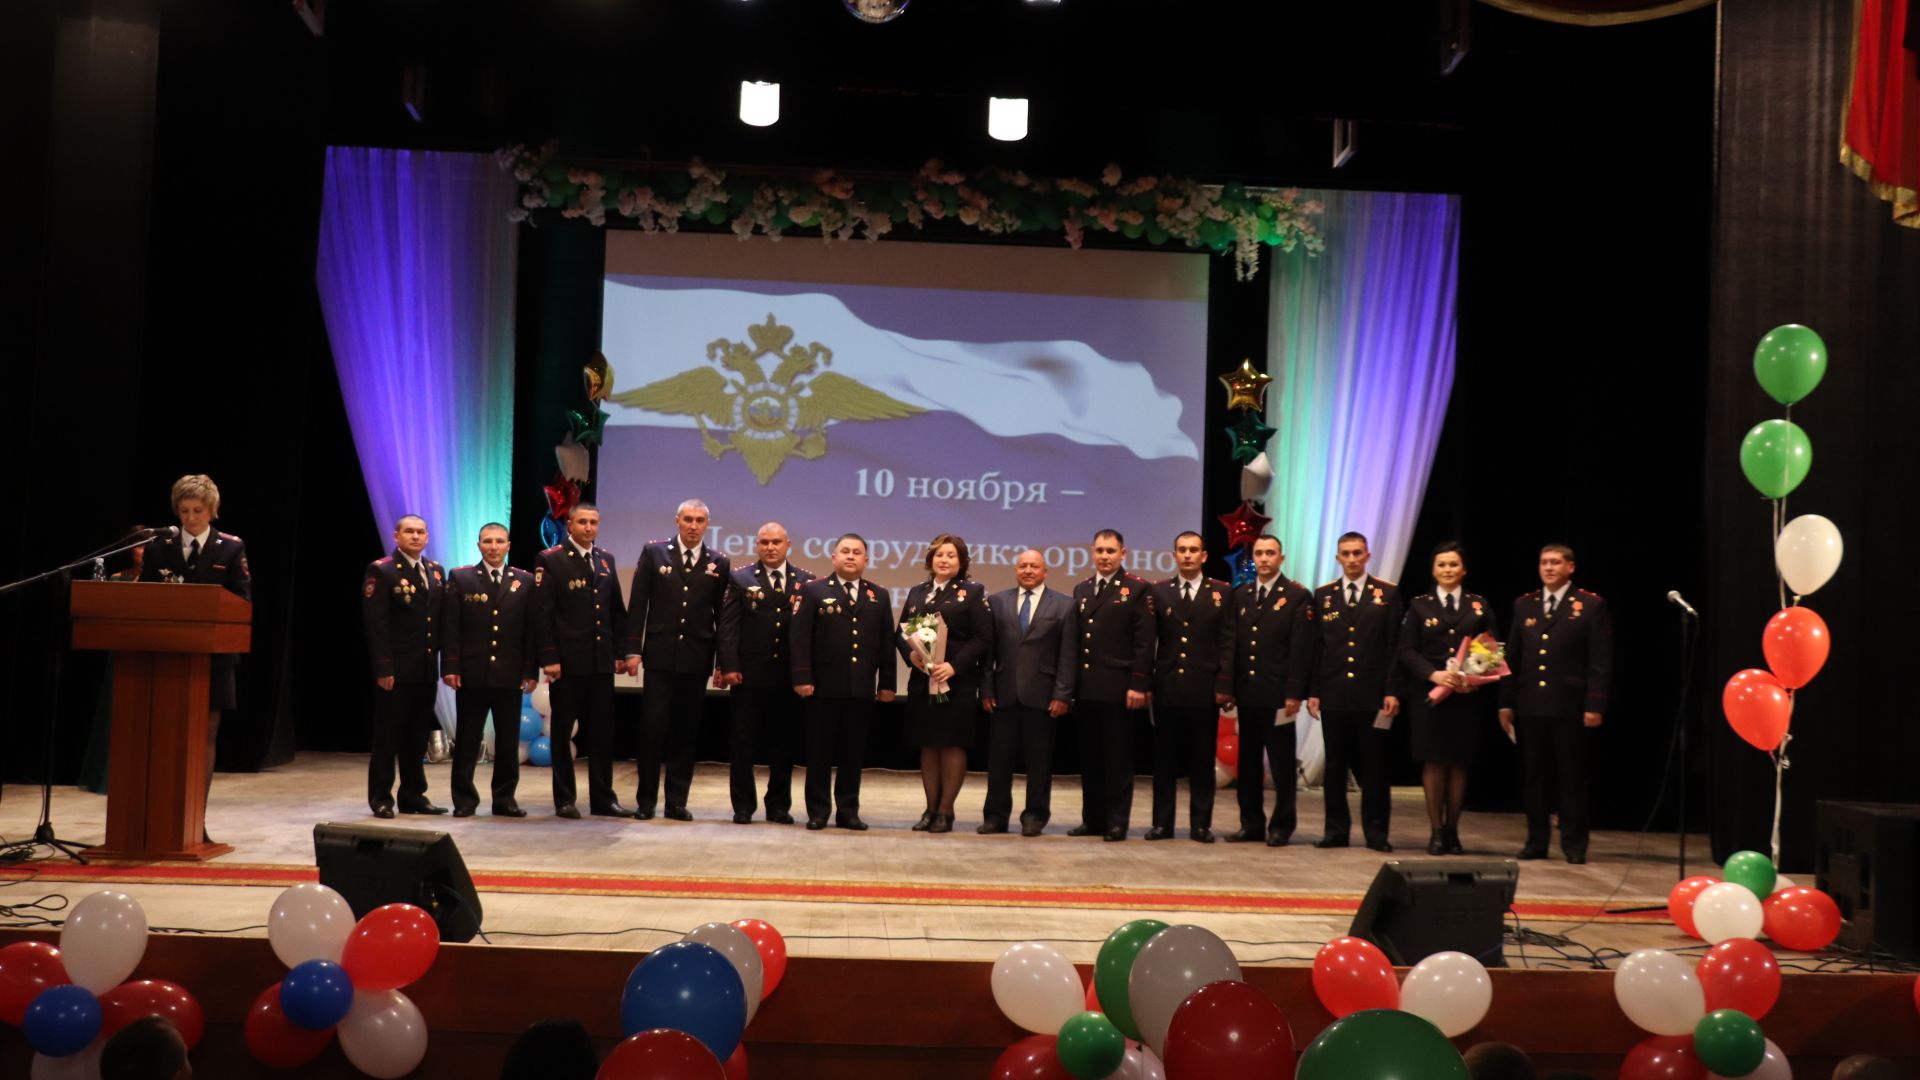 Сотрудники органов внутренних дел Азнакаево отметили профессиональный праздник (ФОТО)